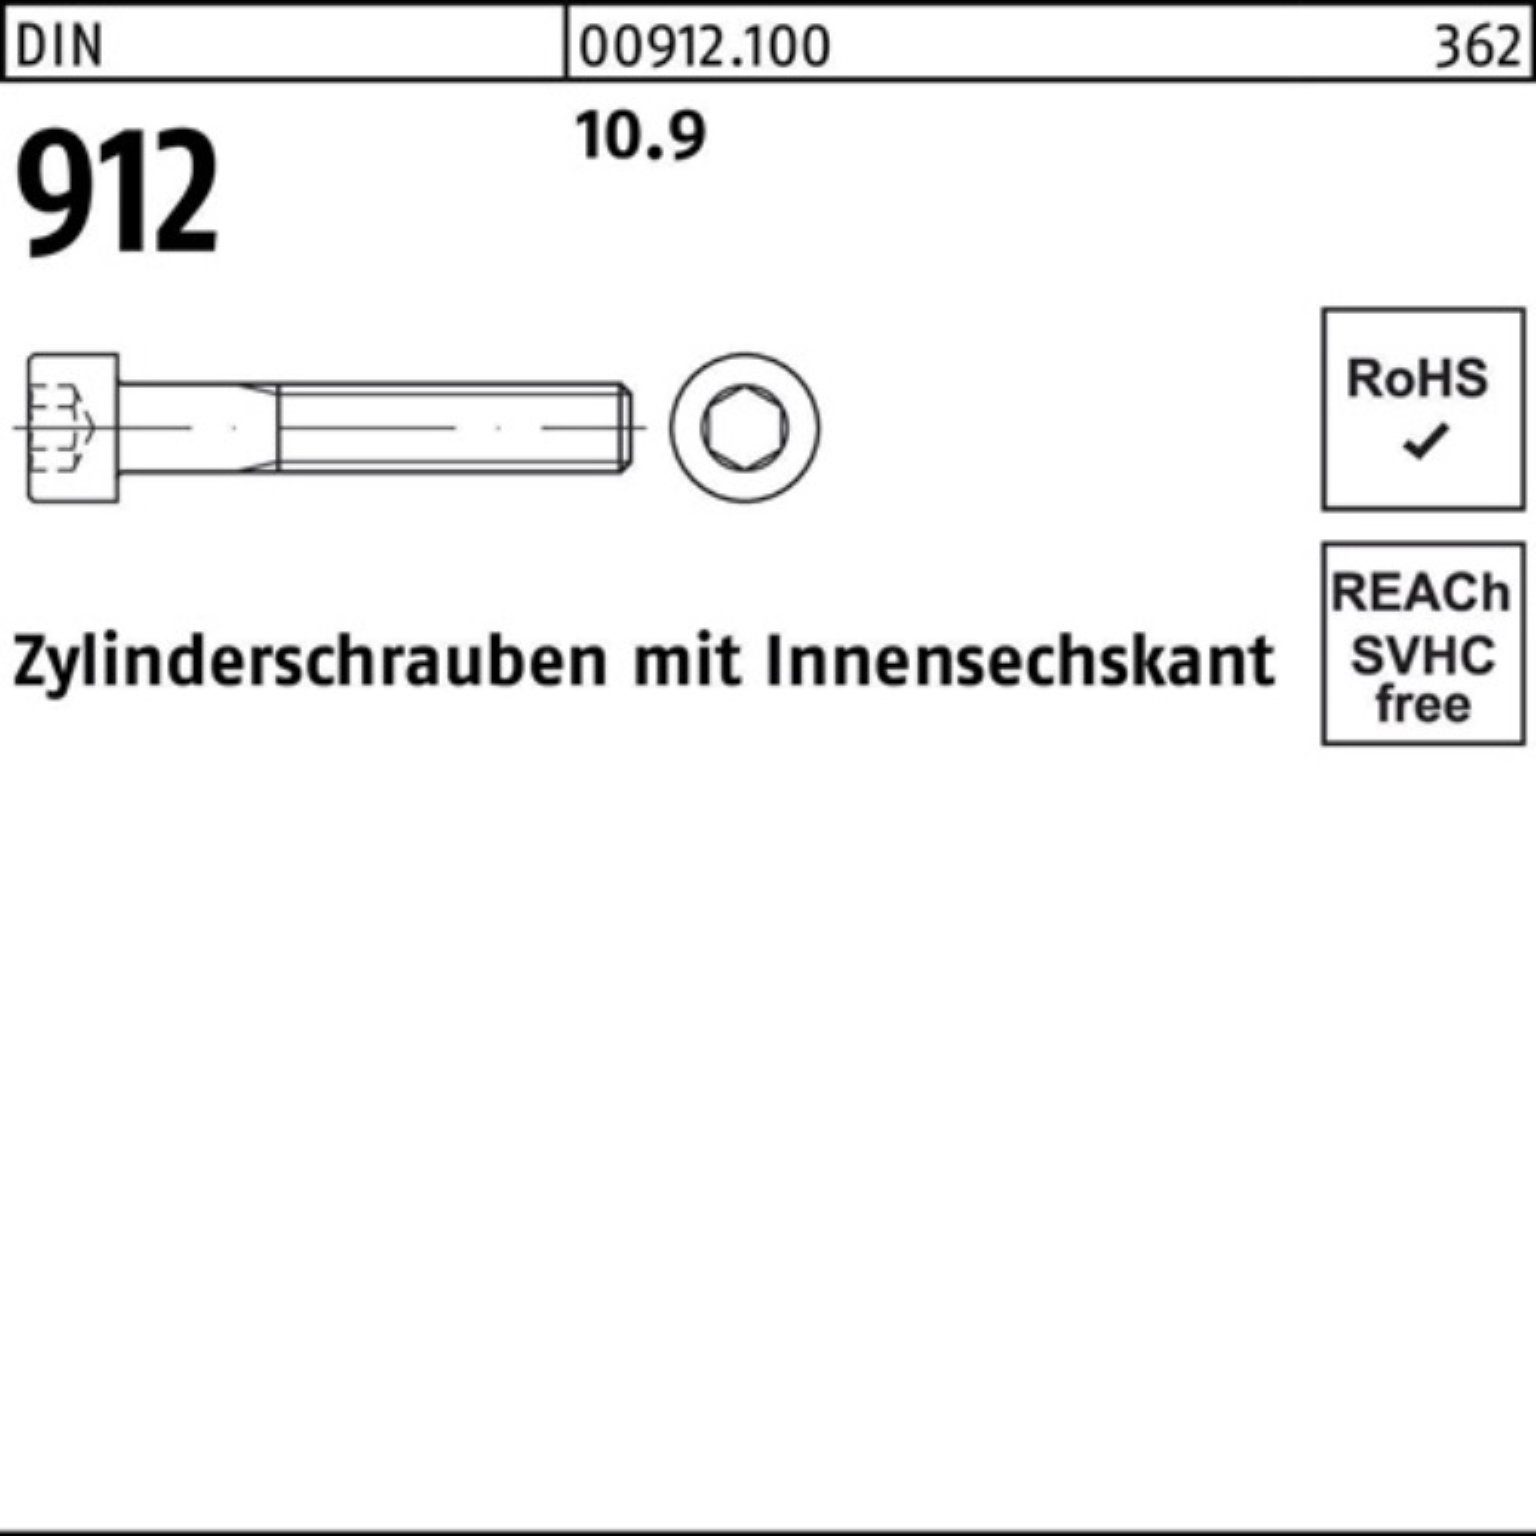 Reyher Zylinderschraube 100er D DIN Zylinderschraube Innen-6kt Pack 10.9 912 Stück 1 M33x 150